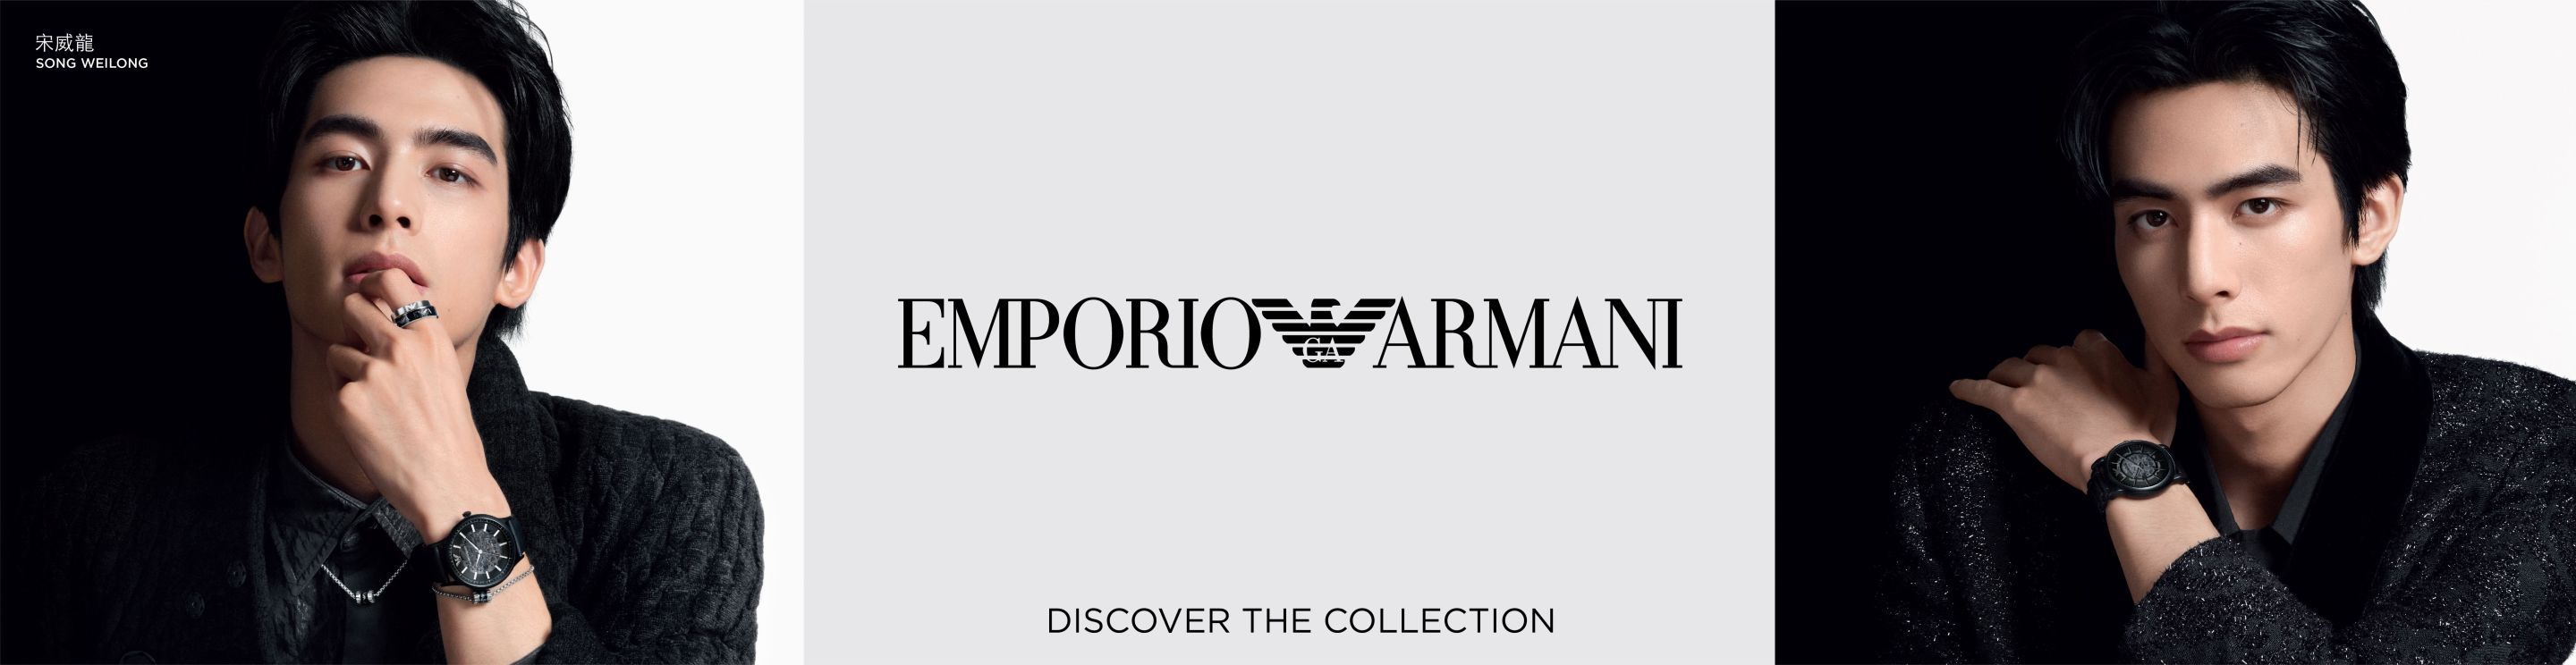 Emporio Armani Watch